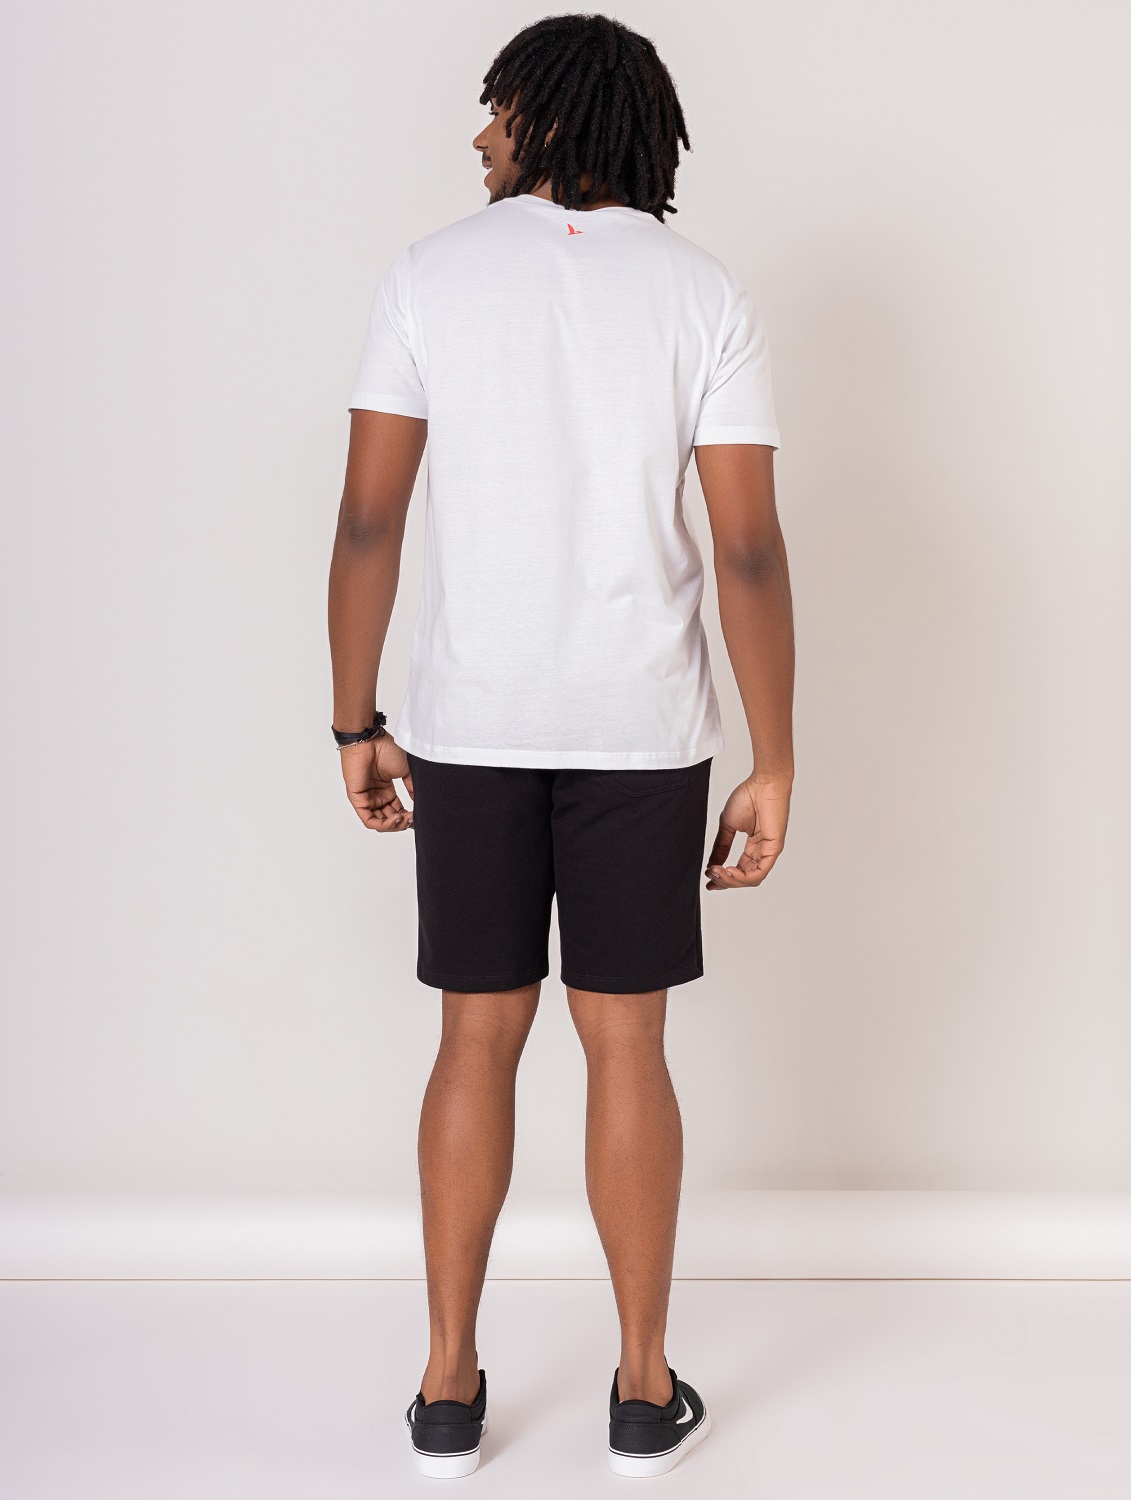 Camiseta Branca Masculina de Algodão Beach Vibes  - OVBK